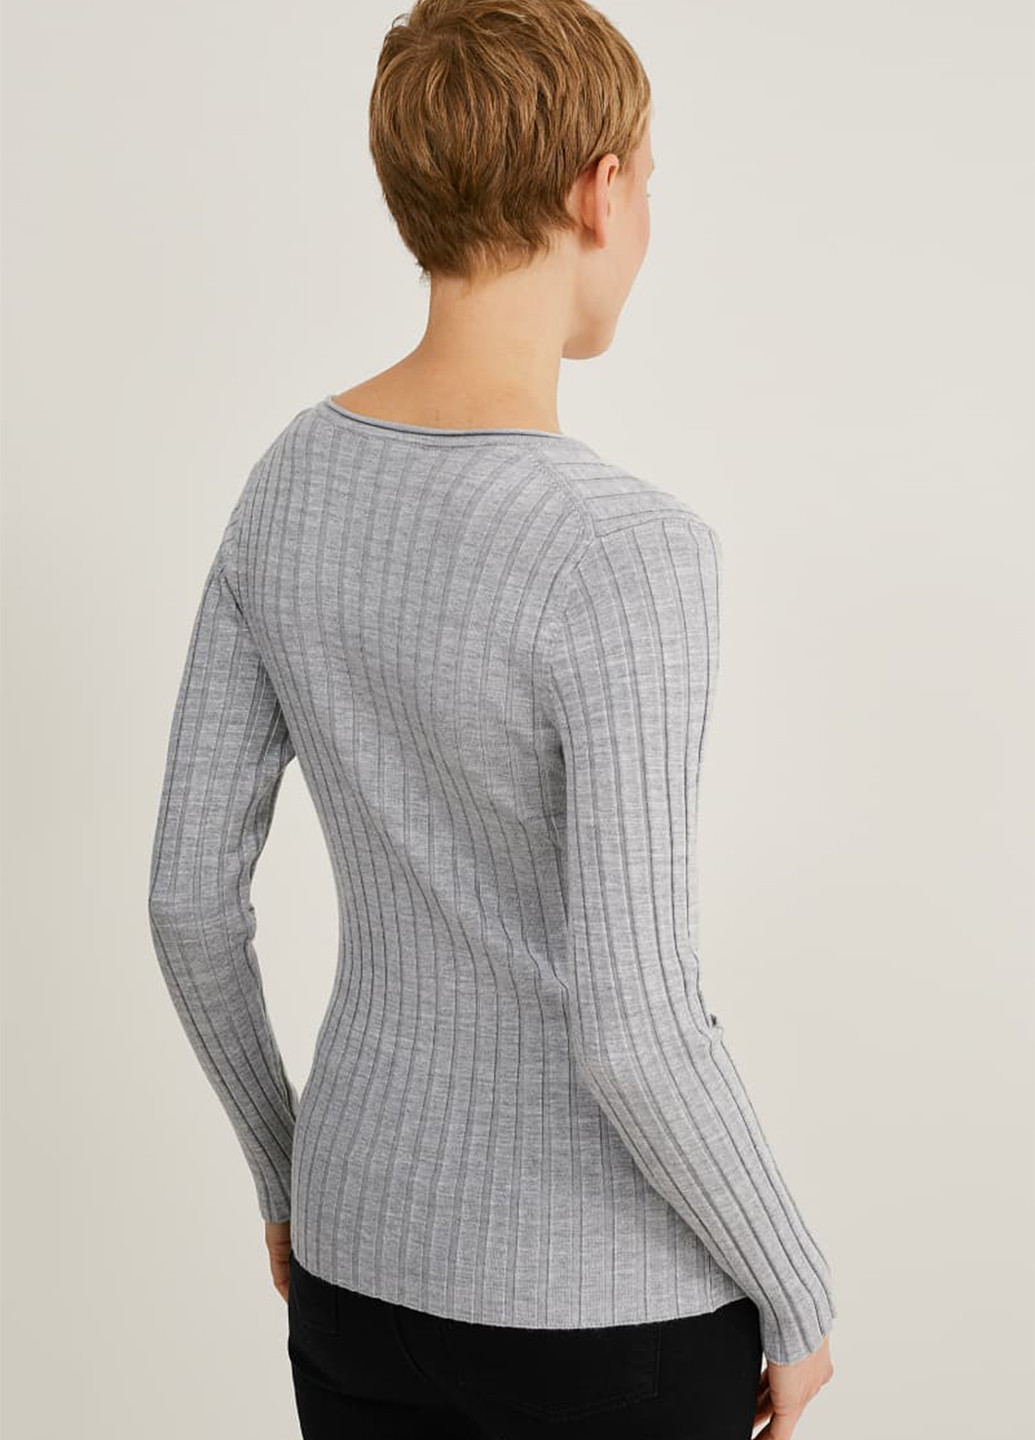 Светло-серый демисезонный пуловер пуловер C&A